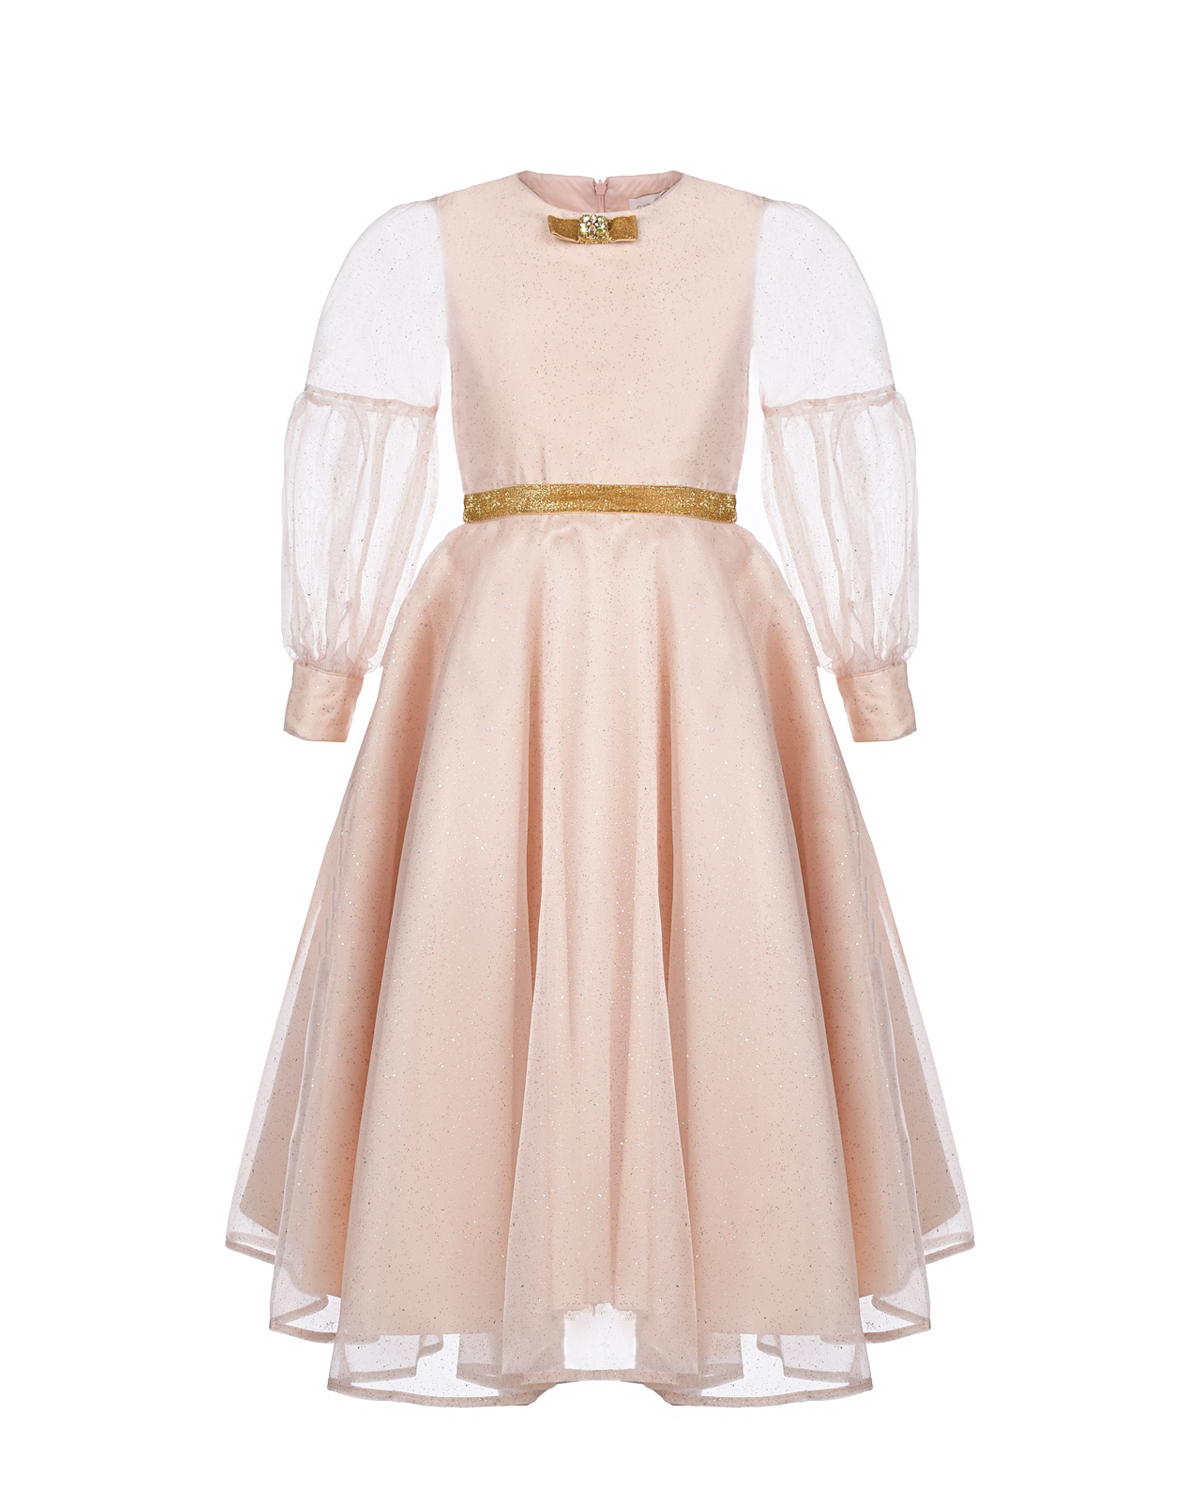 Пудровое платье с отделкой блестками Eirene детское, размер 116, цвет нет цвета - фото 1